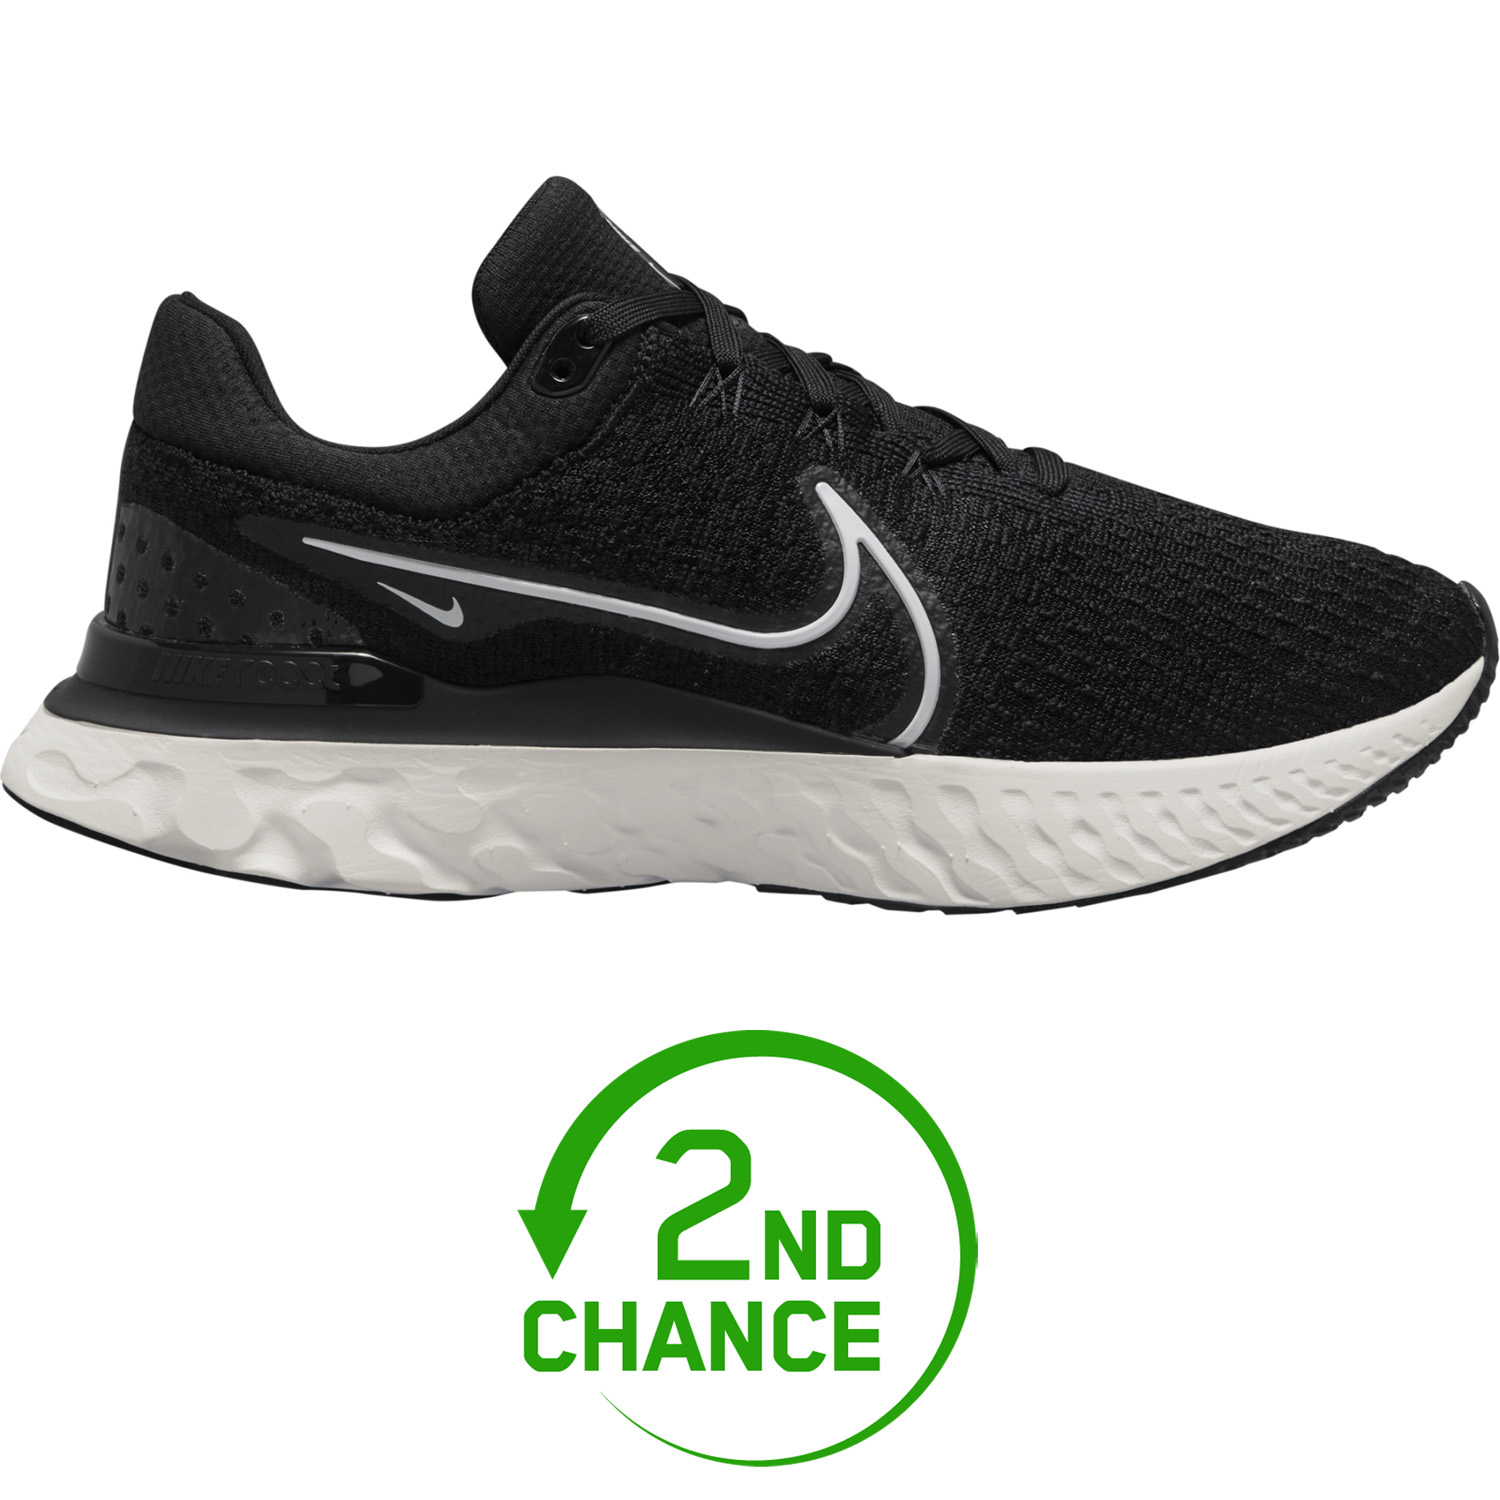 Productfoto van Nike React Infinity Run Flyknit 3 Hardloopschoenen Heren - zwart/wit DH5392-001 - B-Keus